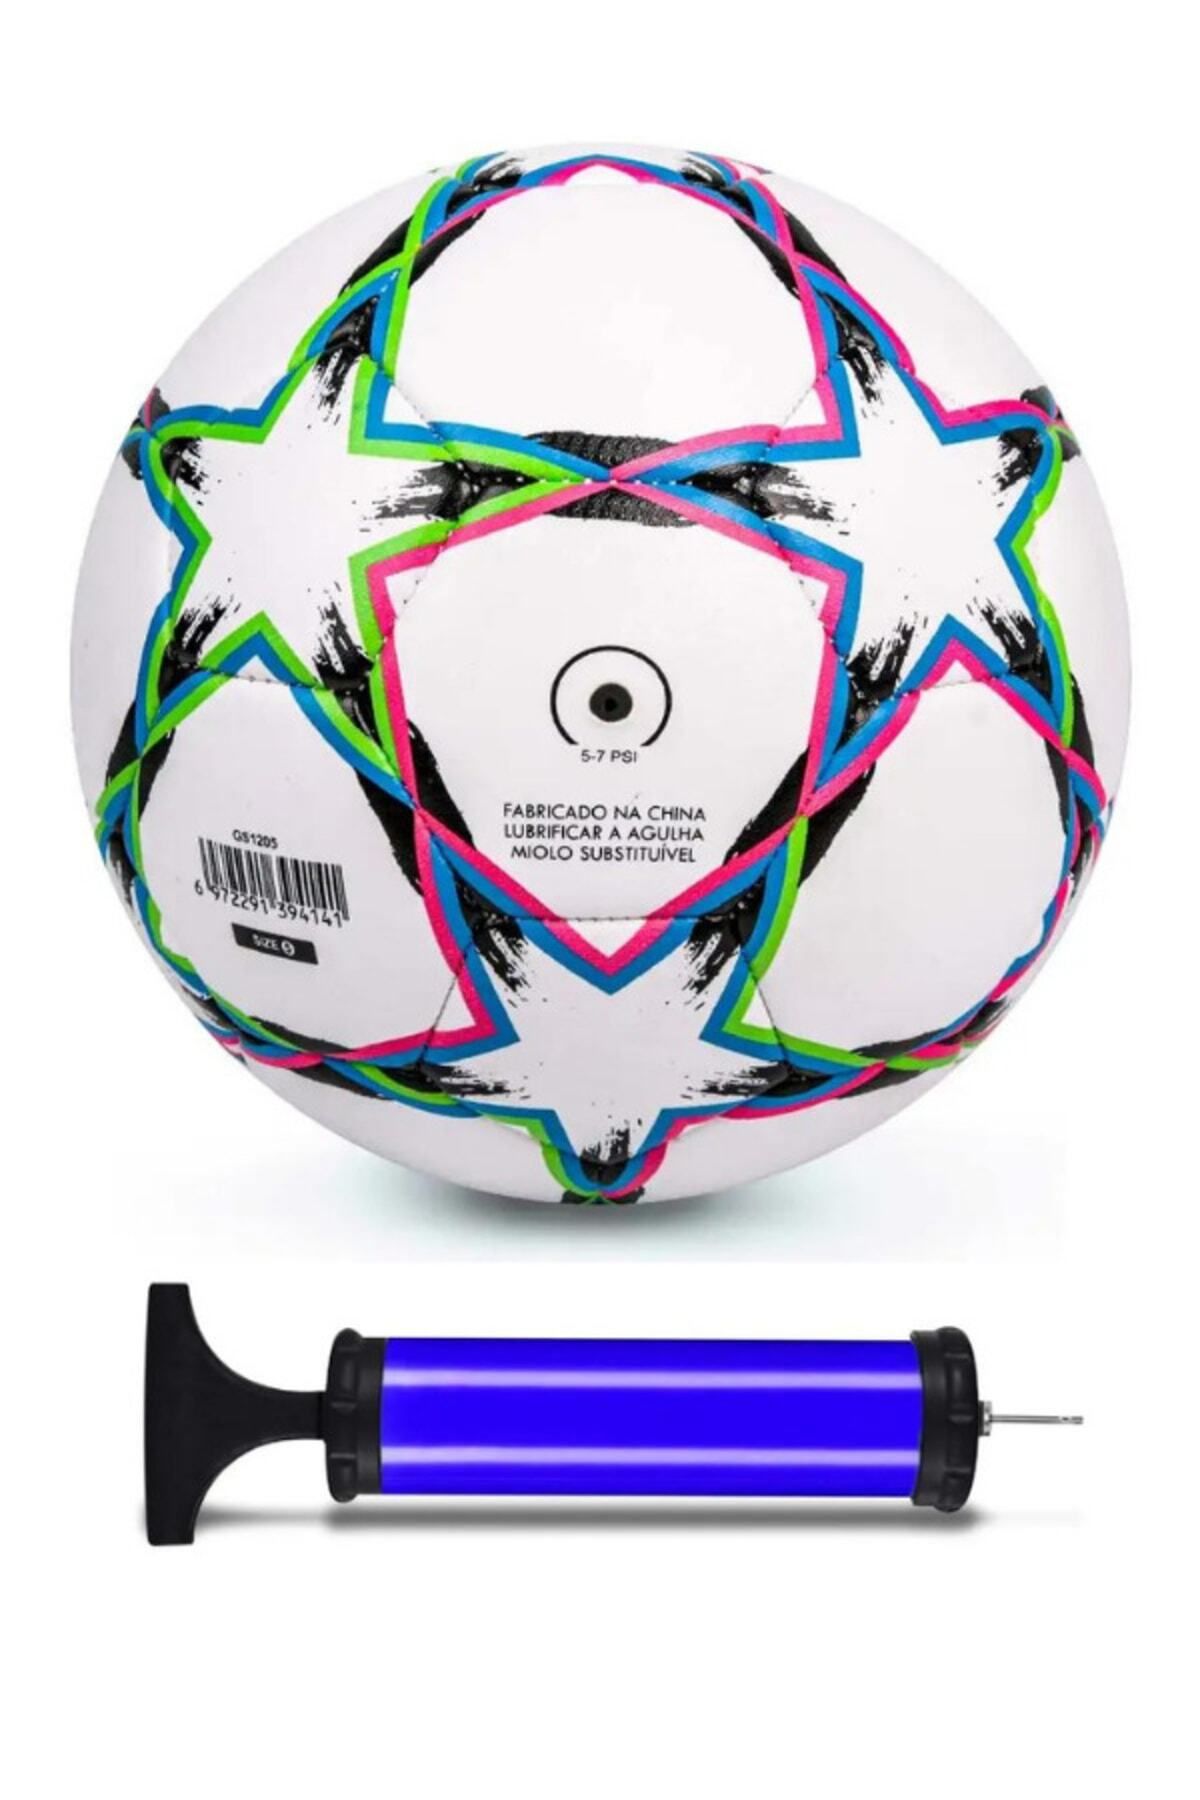 Janissary Şampiyonlar Ligi Tasarımı Profesyonel Futbol Topu, 5 Numara, Halı Saha Topu, Maç Topu + Pompa